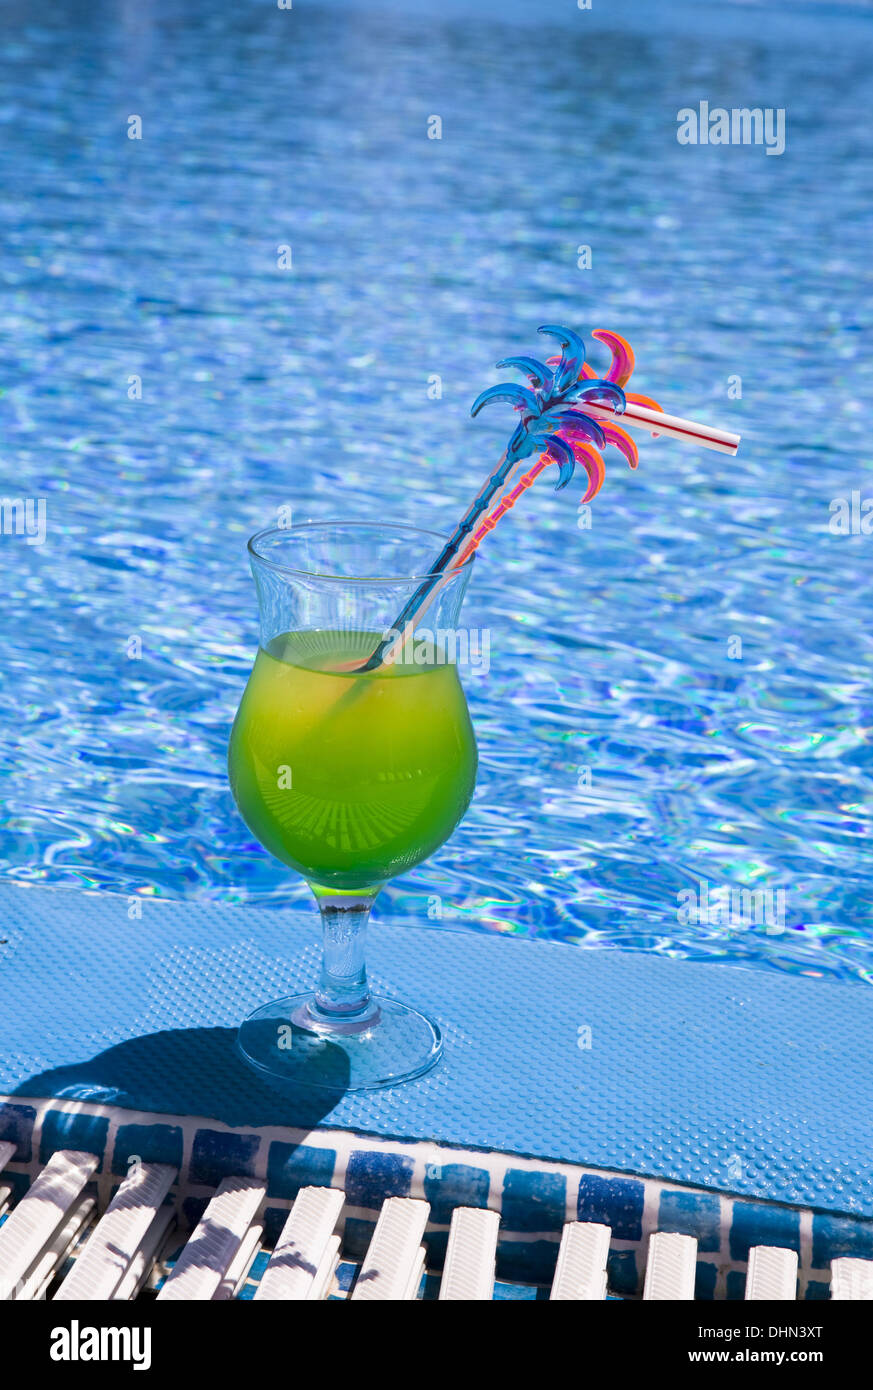 Cocktail glasses by pool Banque de photographies et d'images à